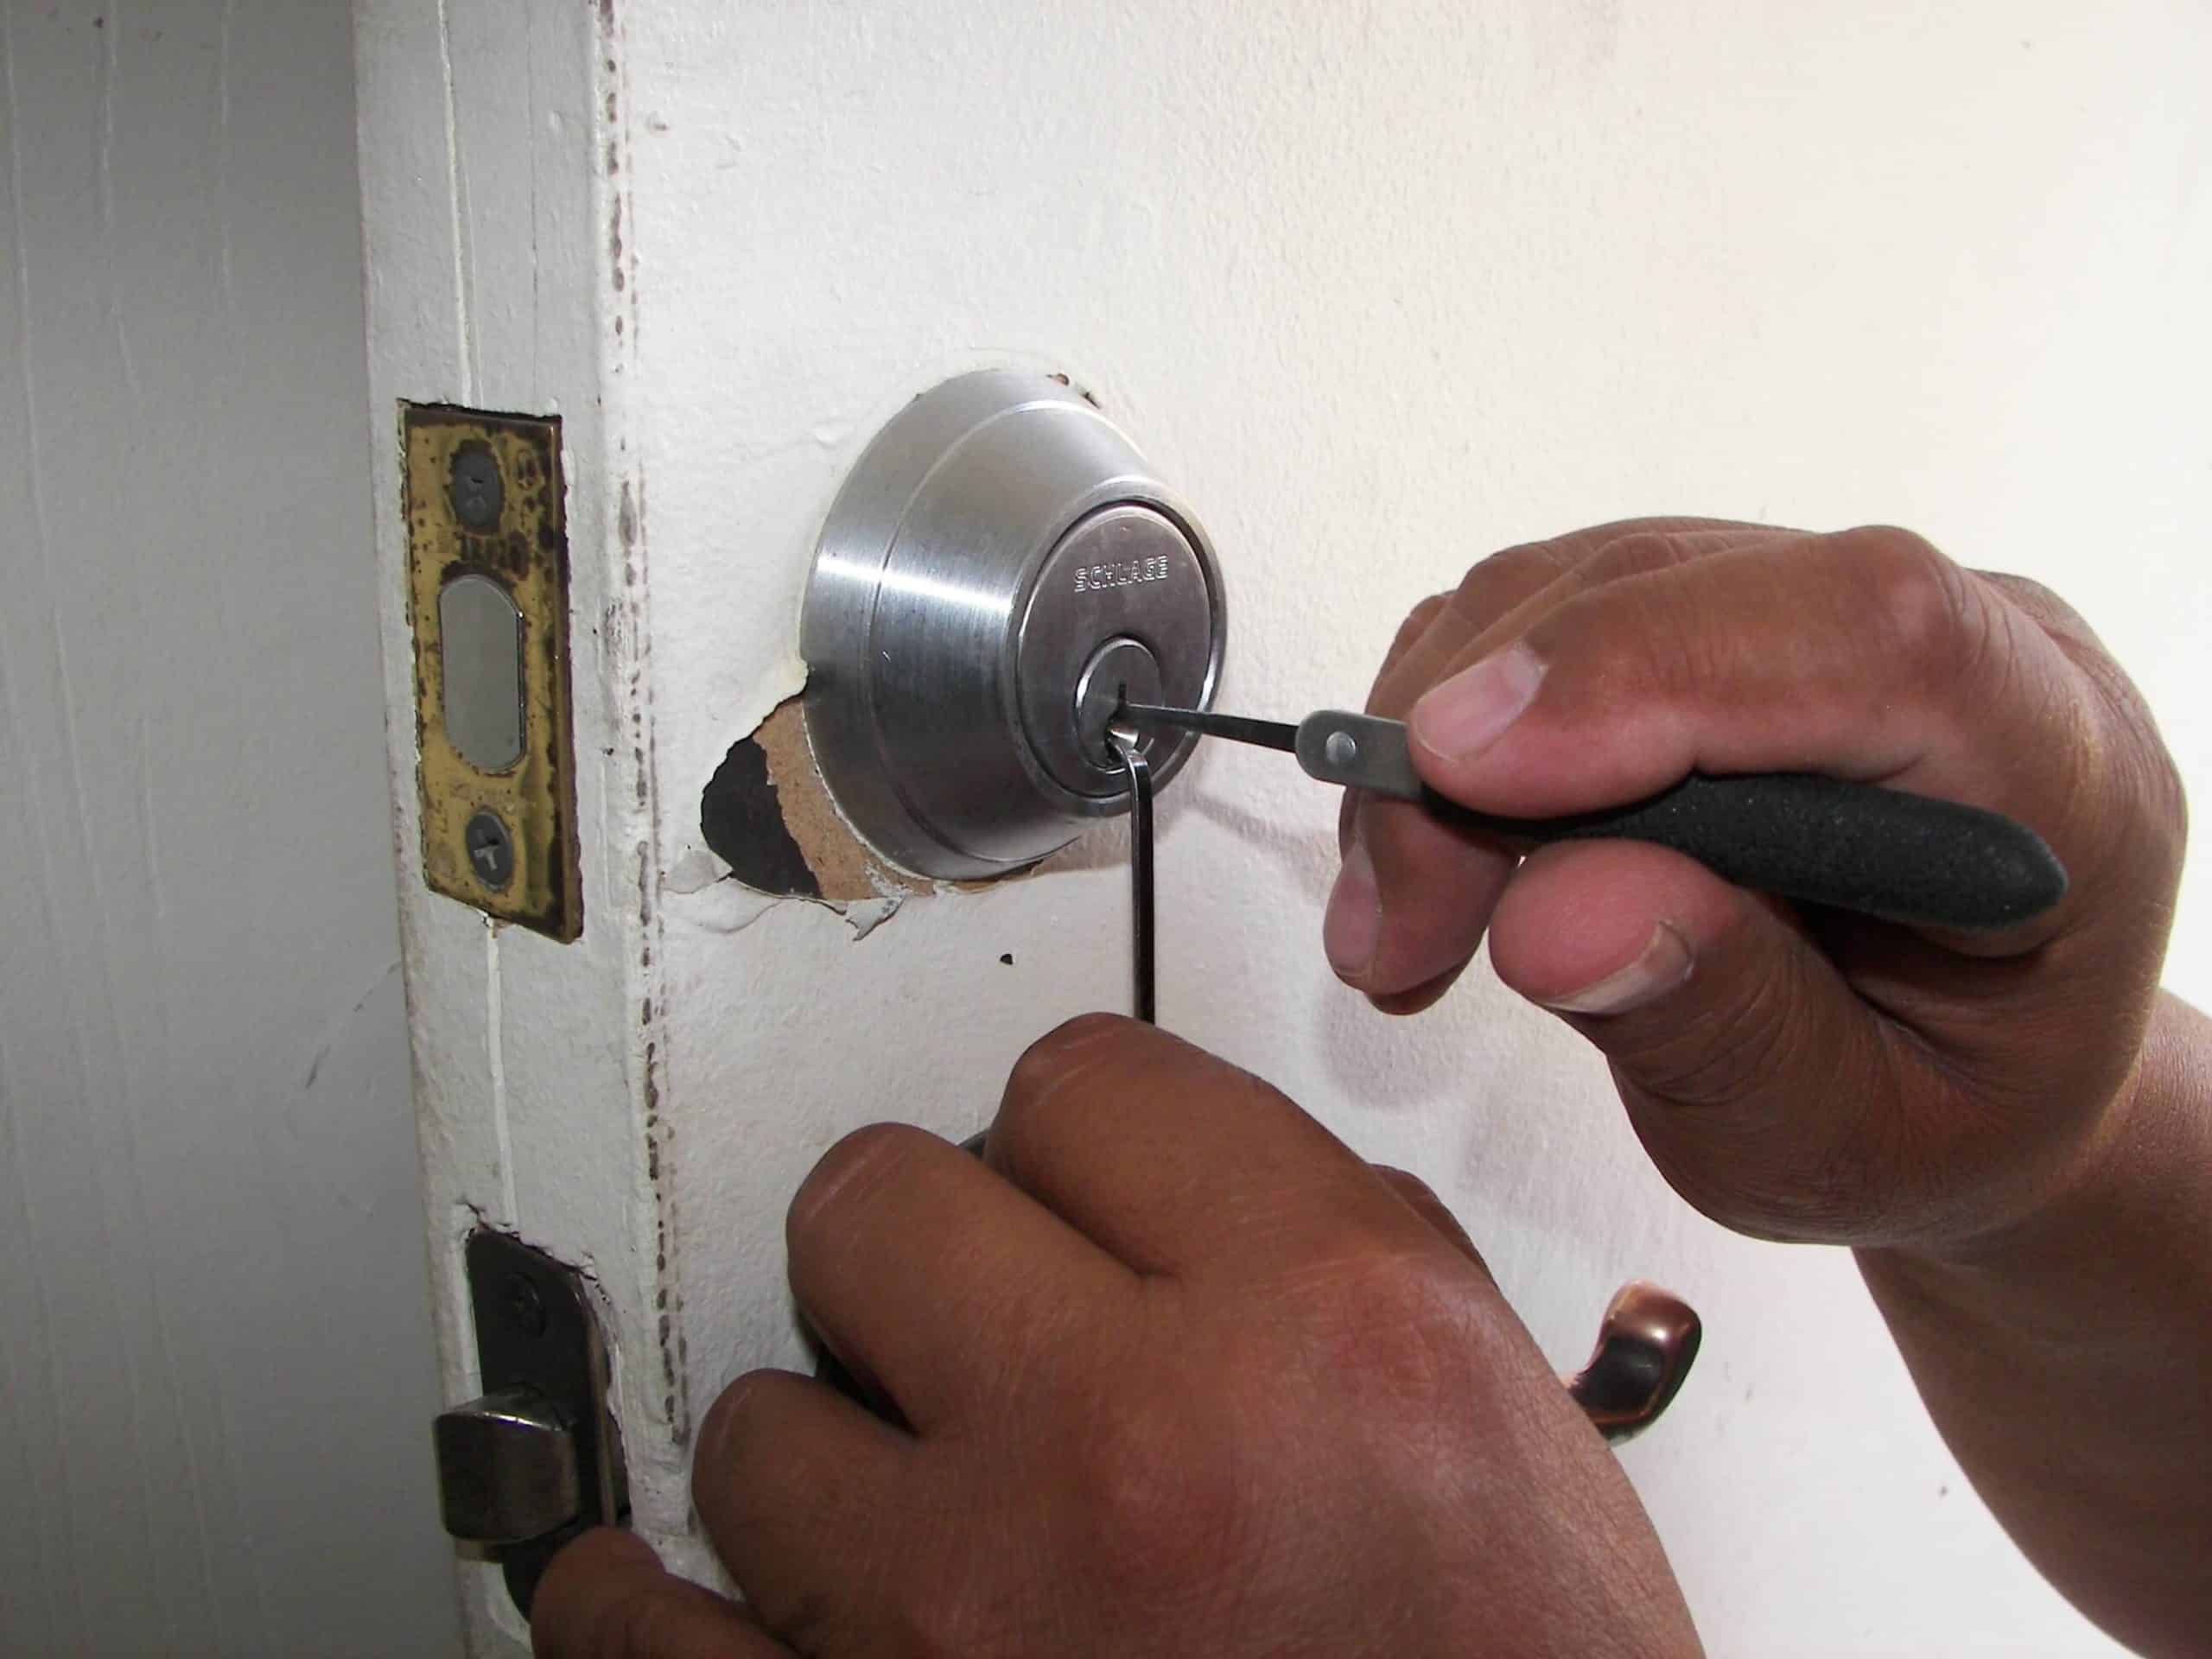 Türöffnung Werkzeug für zugefallene Türen & fehlende Schlüssel